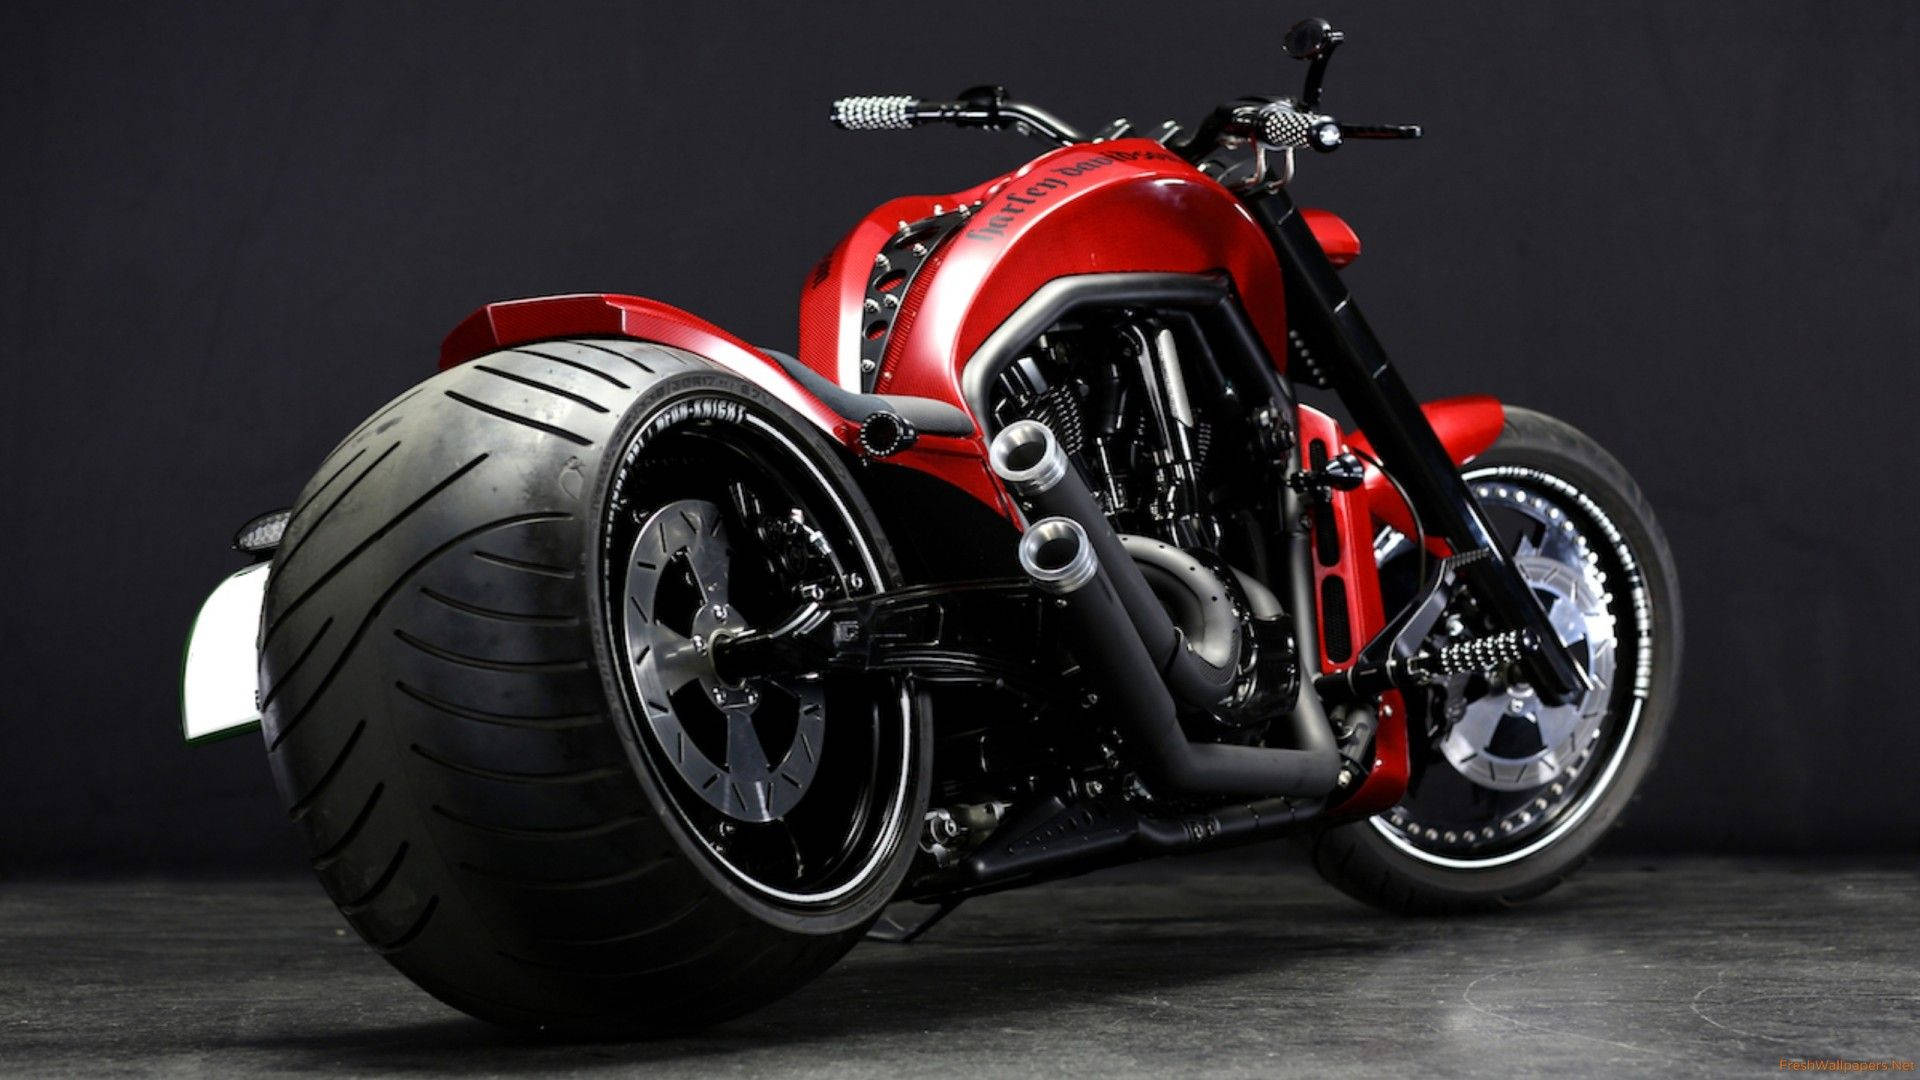 Red Harley Davidson V-rod Background